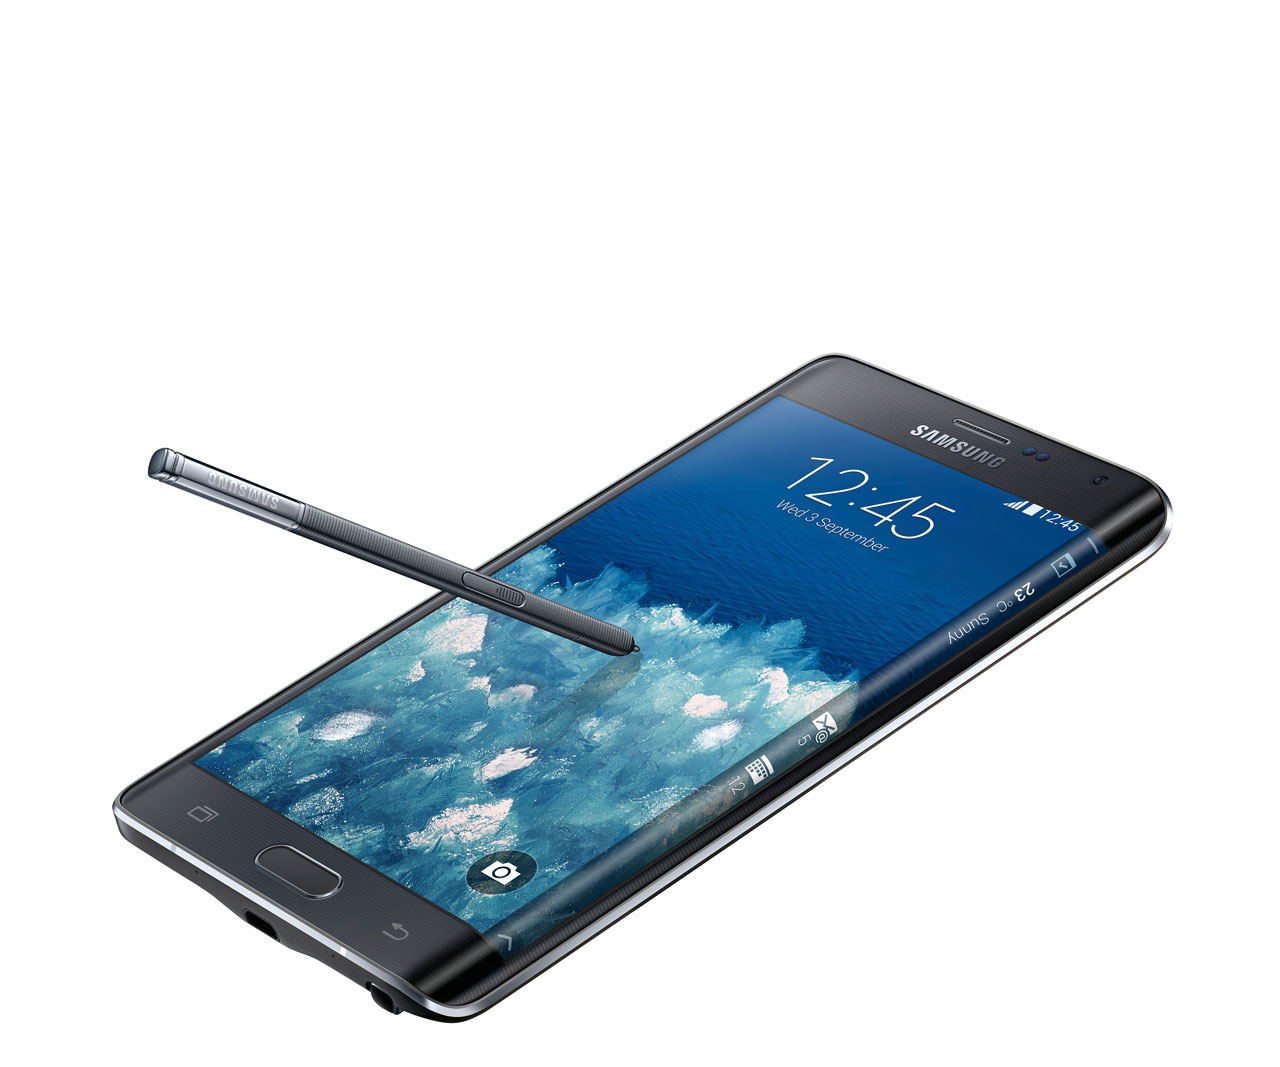 Samsung Galaxy Note Edge - Draufsicht